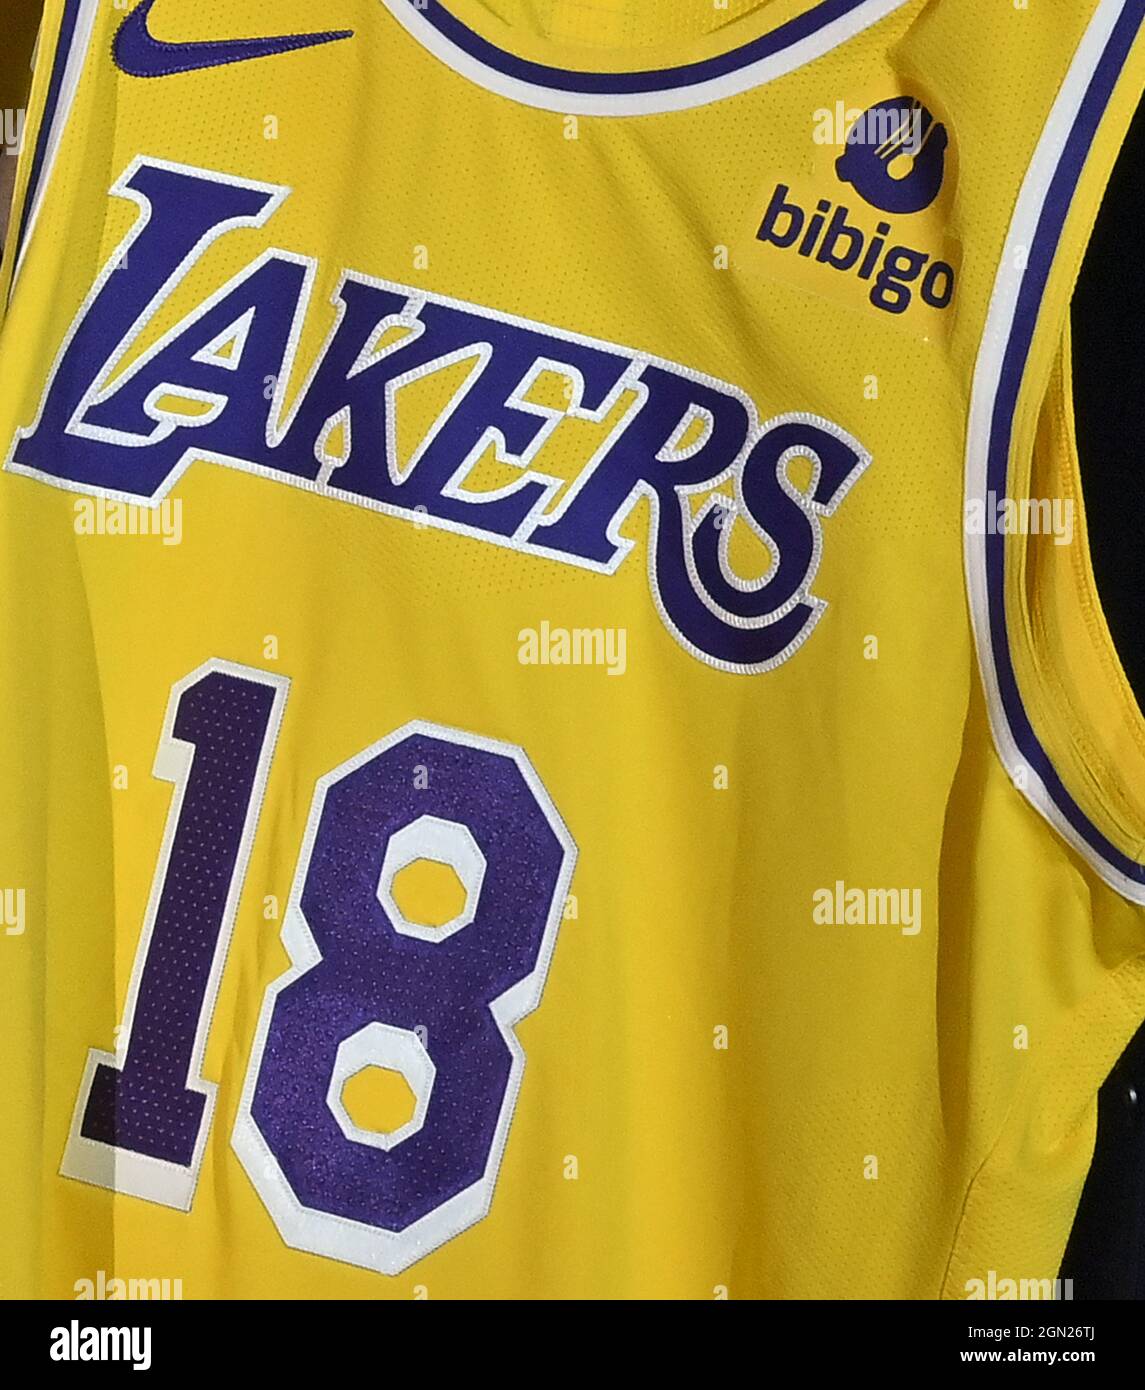 Sospechar par familia Una nueva camiseta de Los Angeles Lakers con un parche Bibigo se ve durante  el evento inicial del equipo para anunciar una nueva asociación de  marketing global con Bibigo, una popular compañía